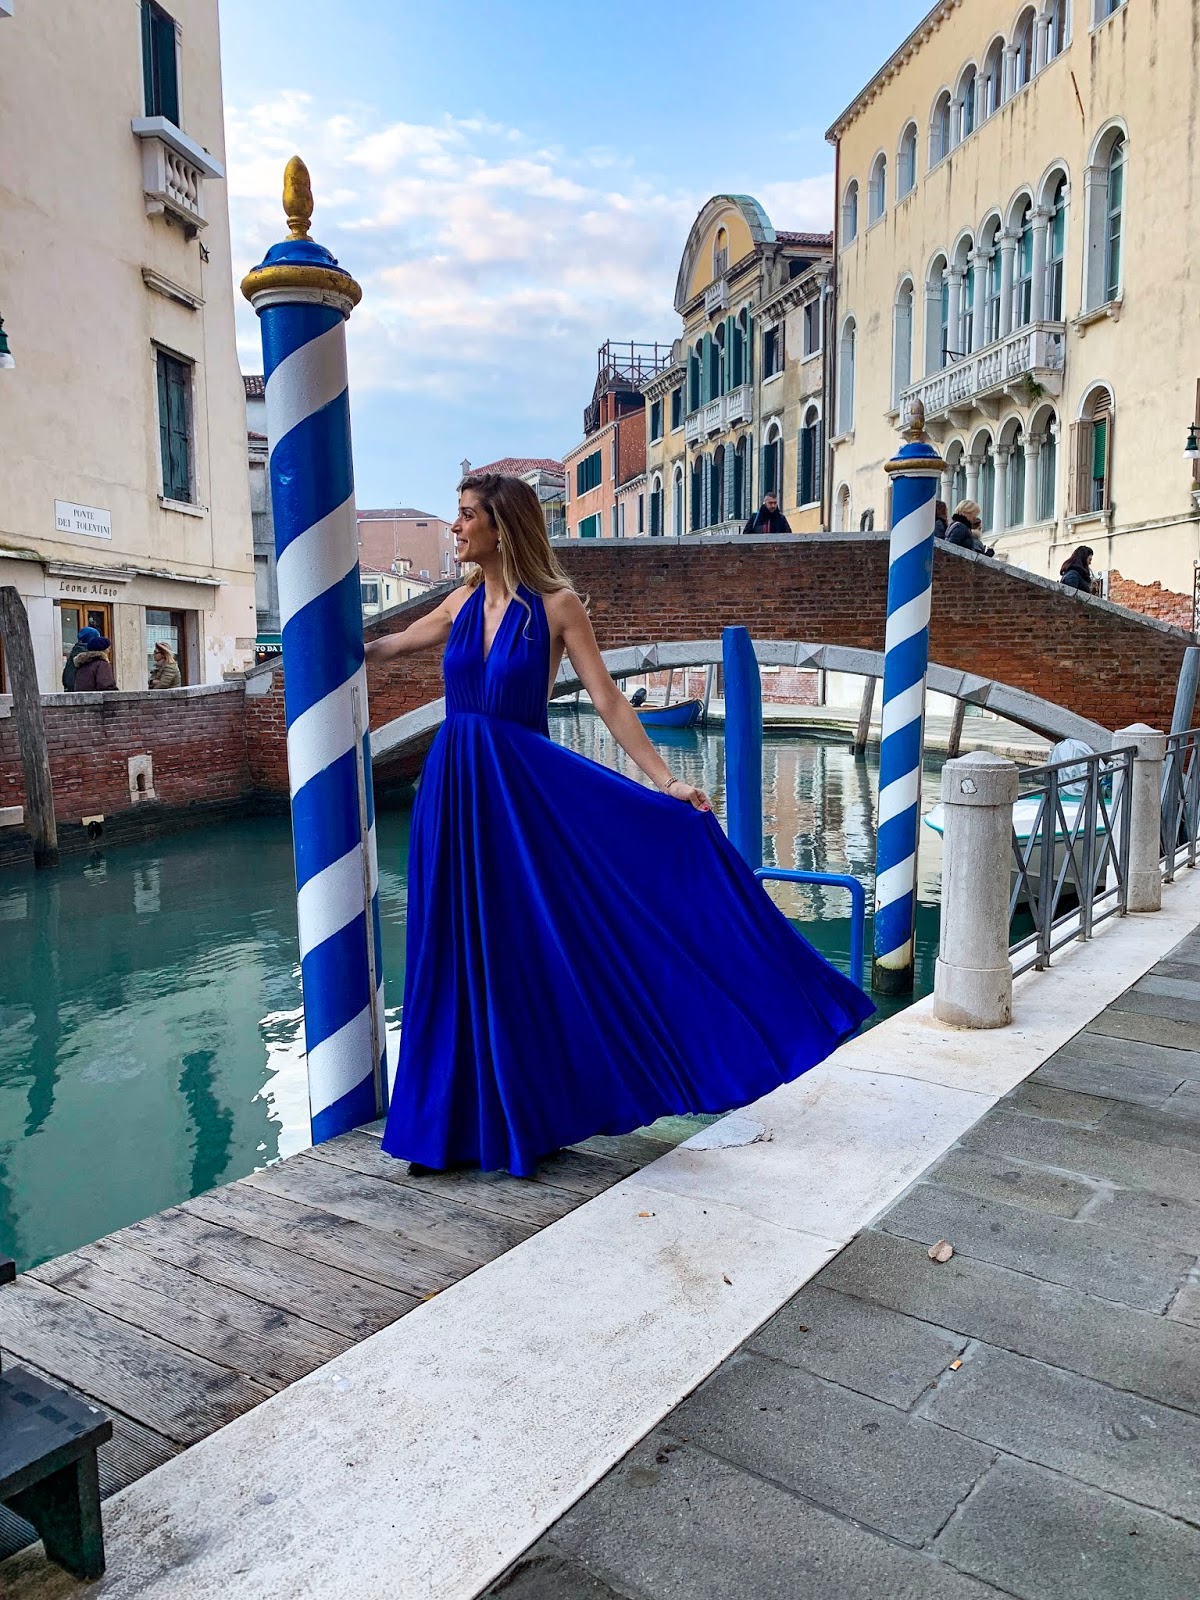 Venezia vista dall'acqua: un'esperienza magica